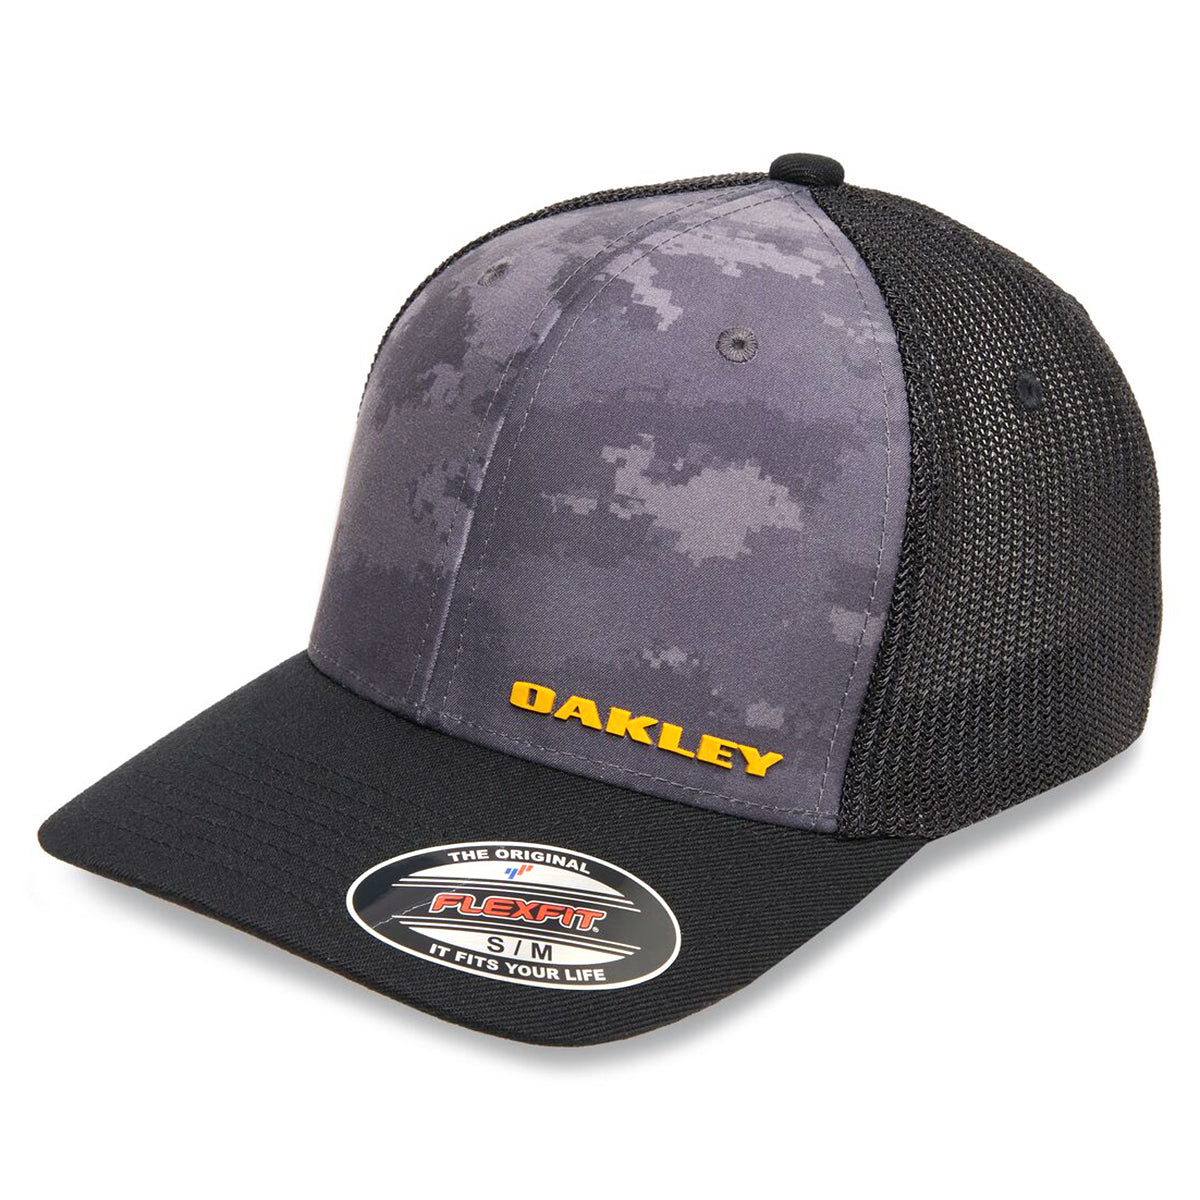 Oakley Trucker Cap